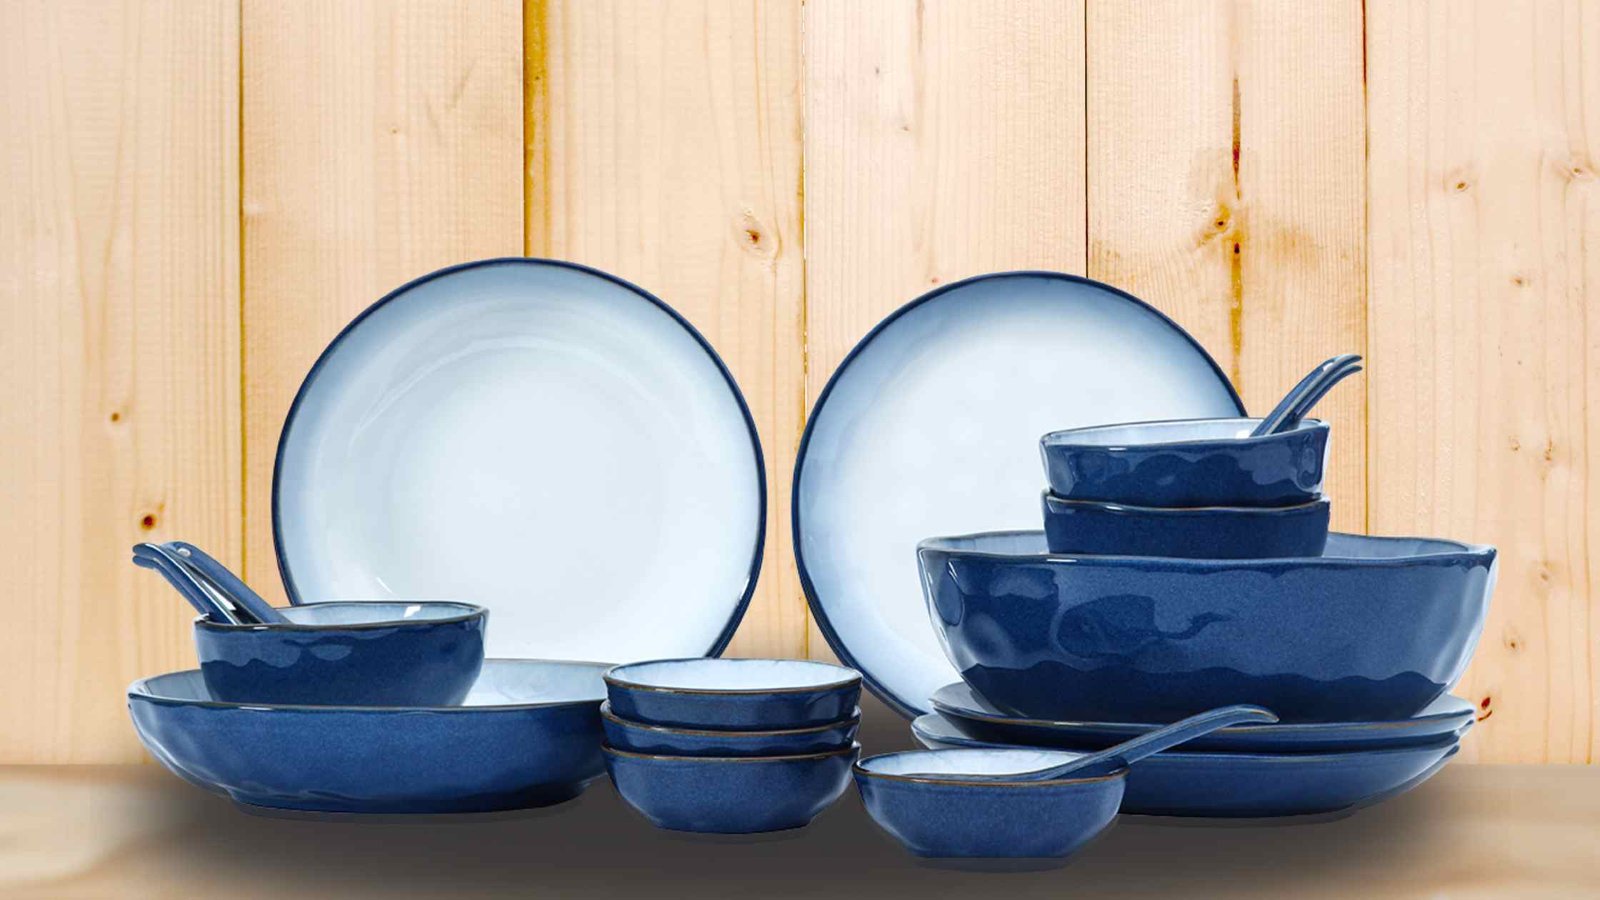 15 Essential Ceramic Kitchenware To Raise Your Kitchen’s Standards